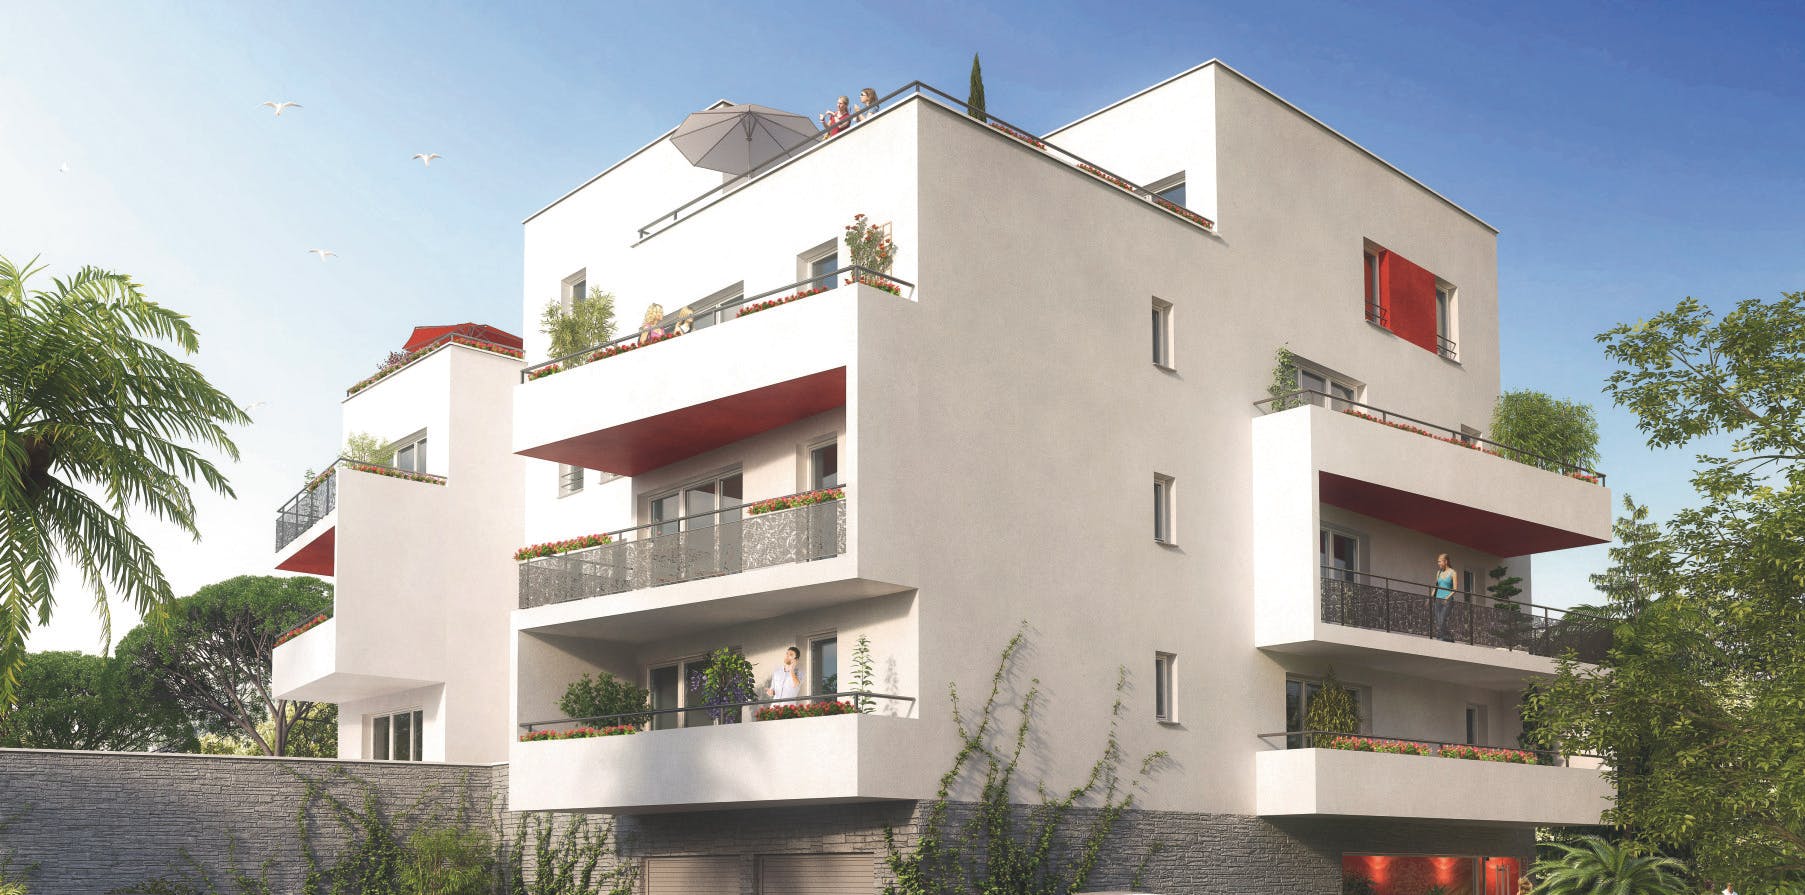 Une résidence de 45 logements à Perpignan